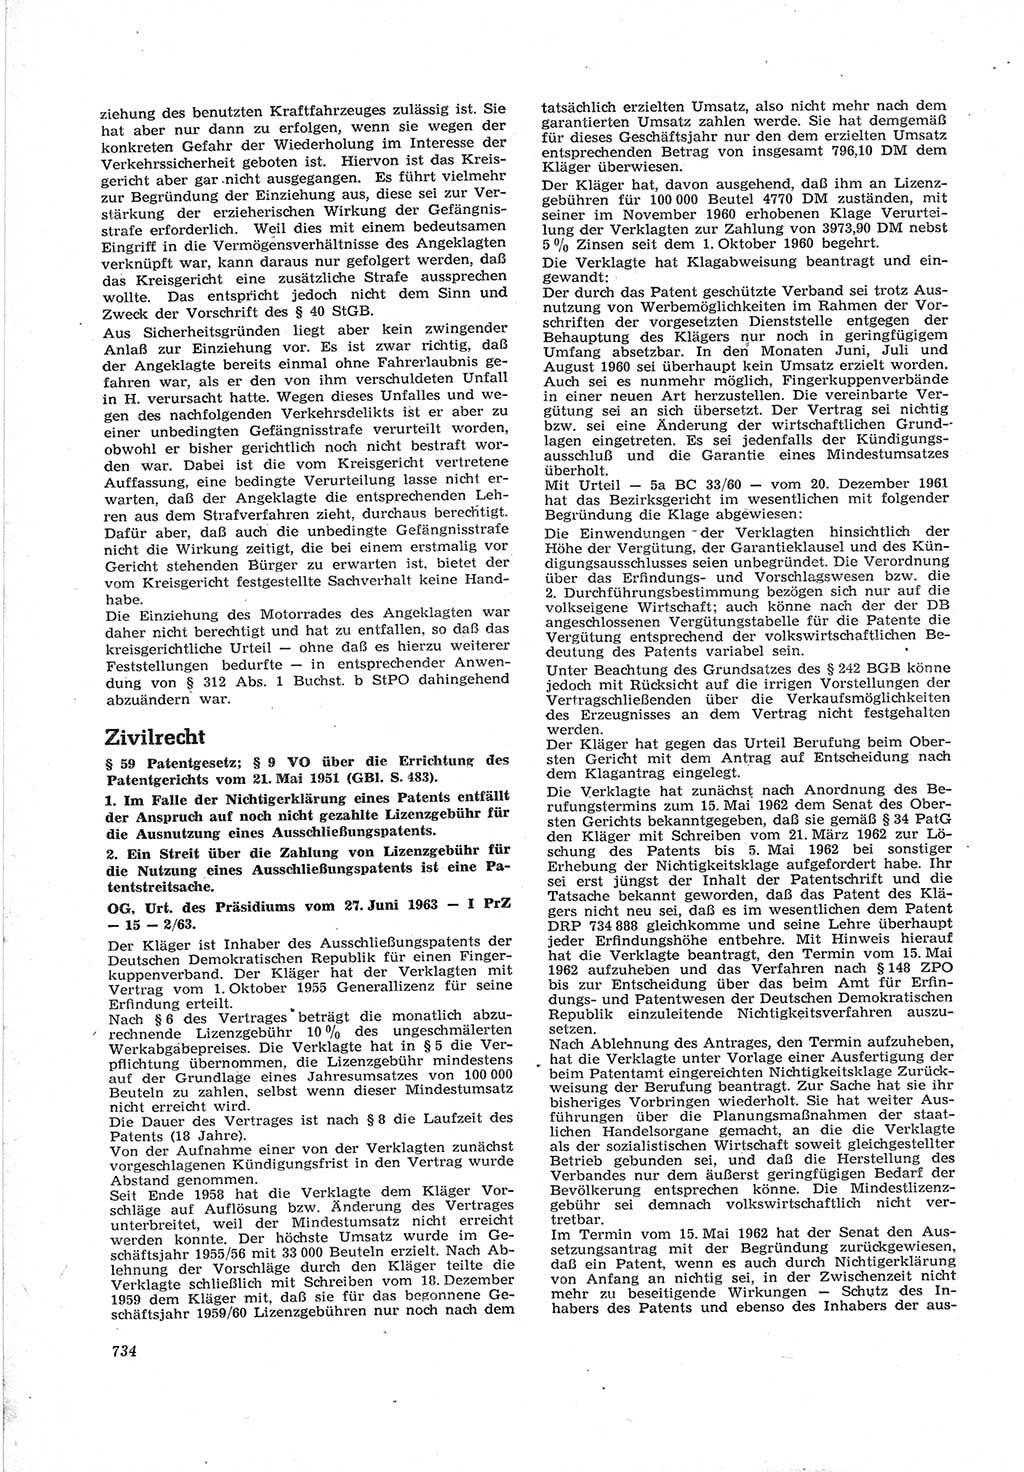 Neue Justiz (NJ), Zeitschrift für Recht und Rechtswissenschaft [Deutsche Demokratische Republik (DDR)], 17. Jahrgang 1963, Seite 734 (NJ DDR 1963, S. 734)